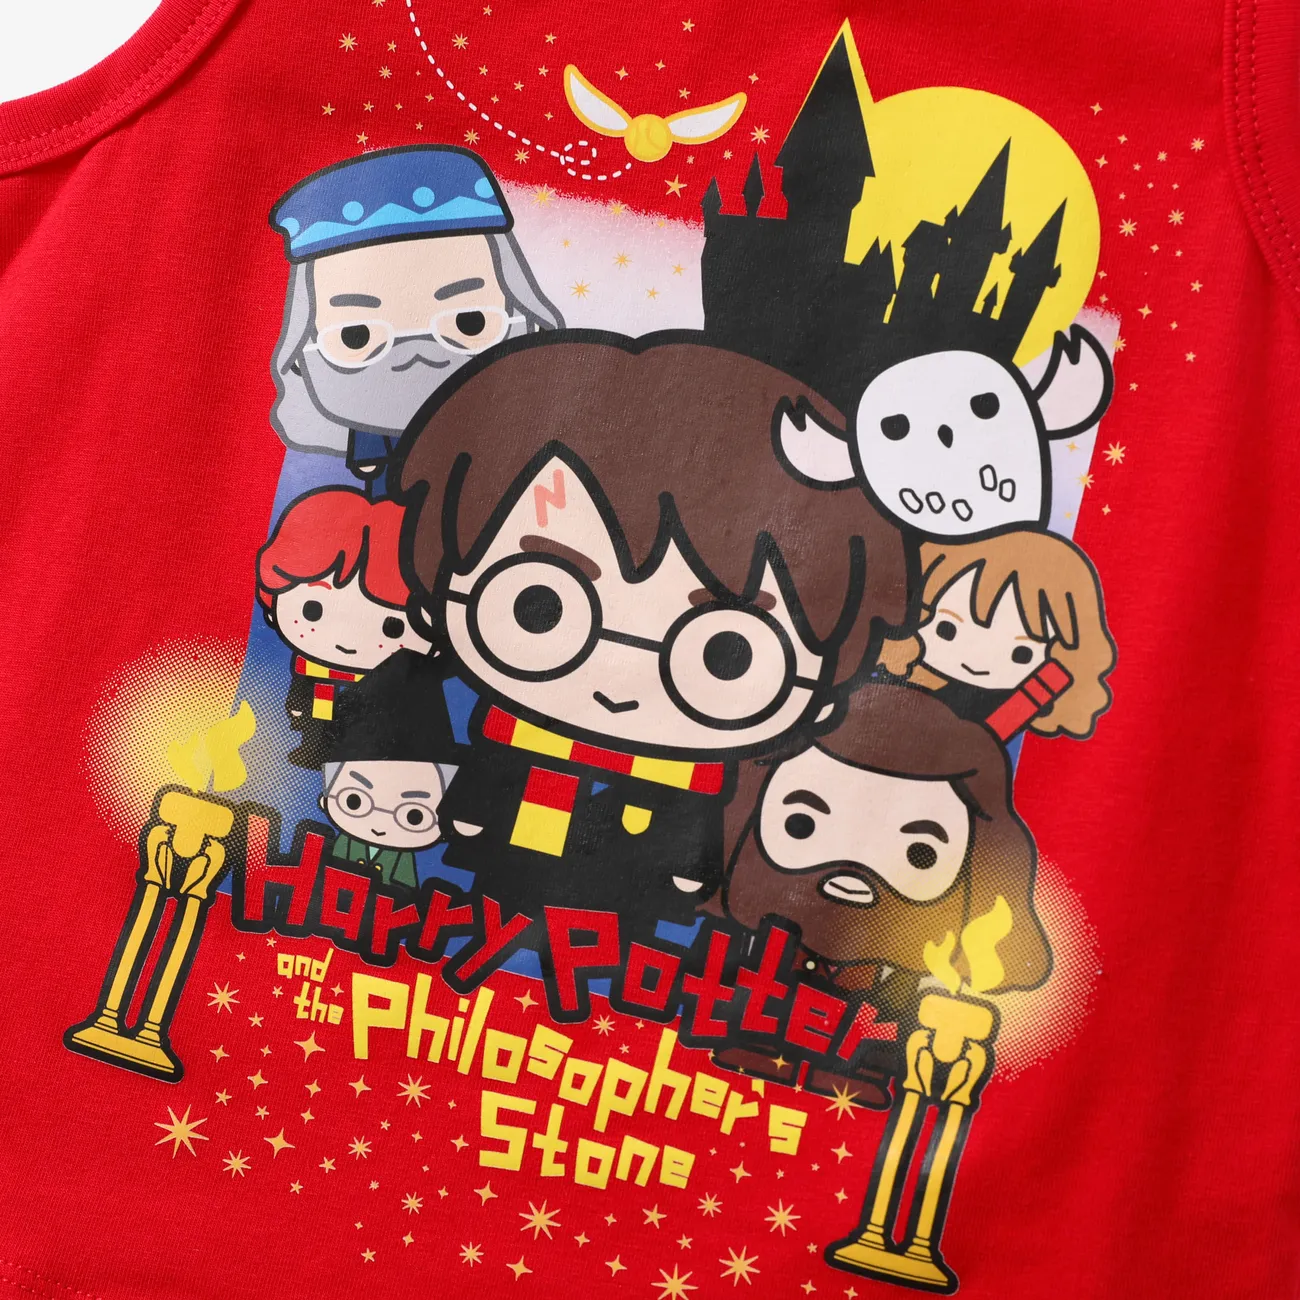 Harry Potter Niño pequeño Chico Infantil conjuntos de camiseta Rojo big image 1